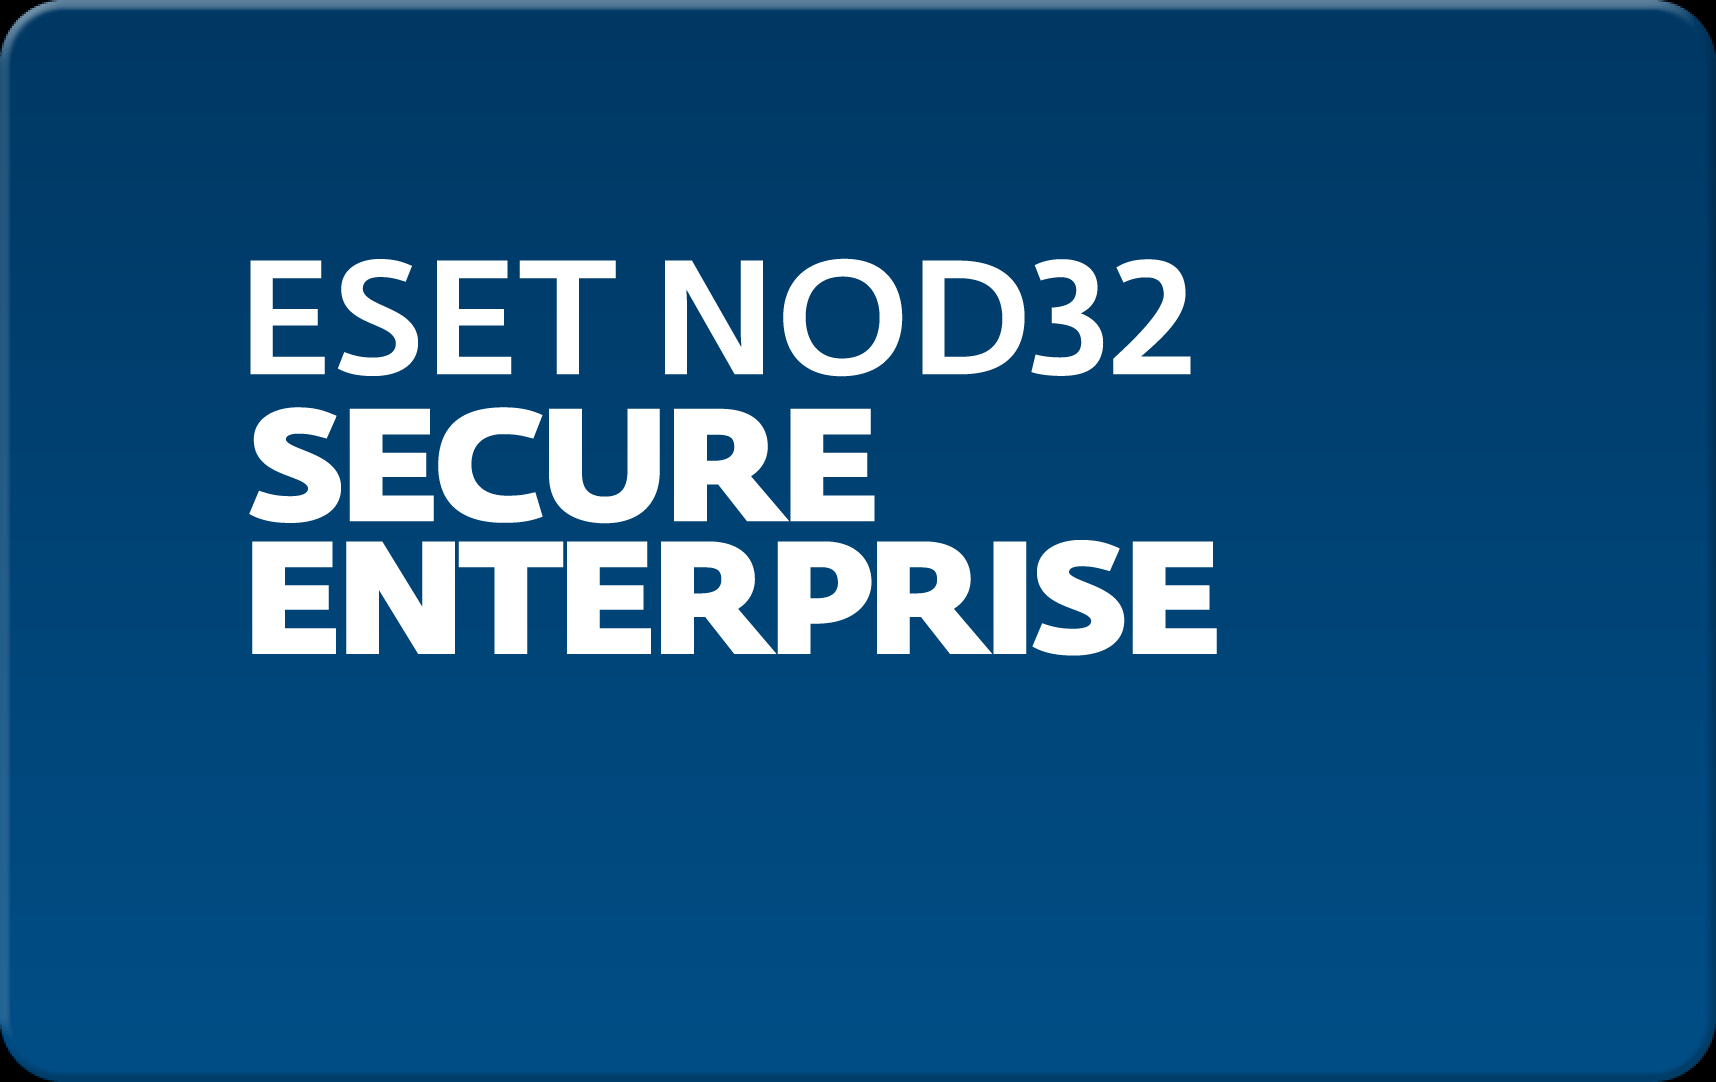        Eset NOD32 Secure Enterprise  174 